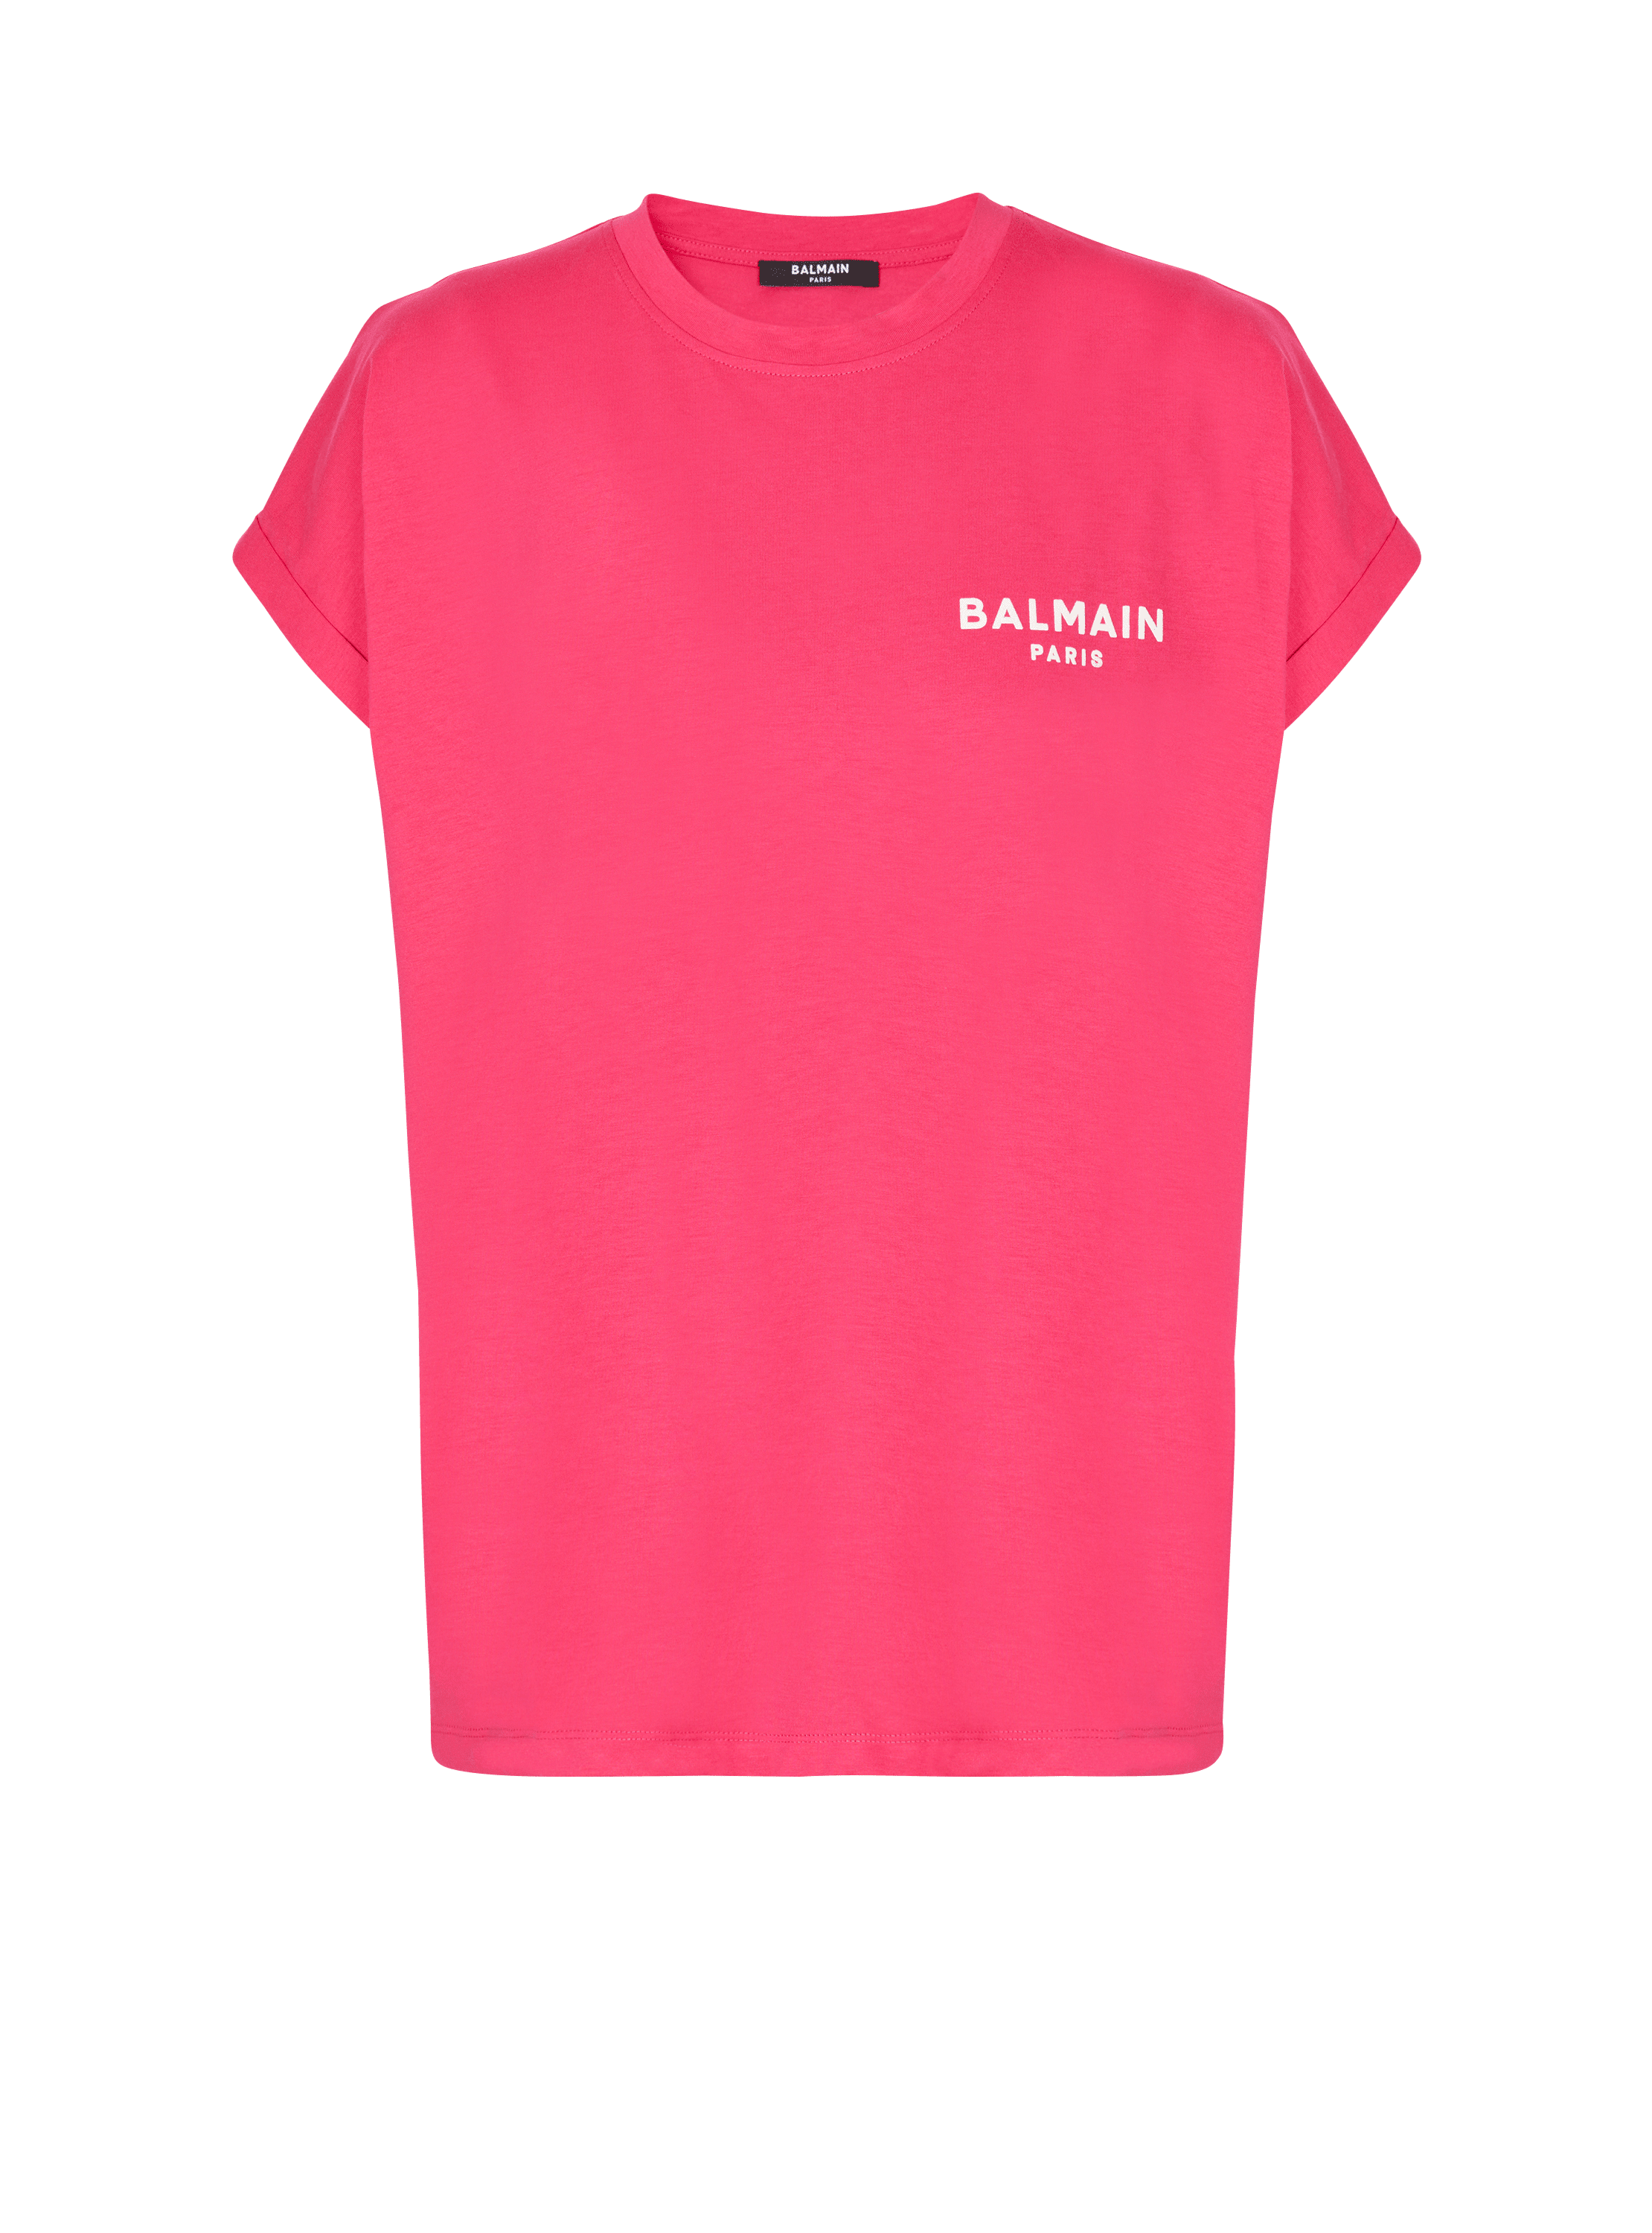 Camiseta con logotipo de Balmain serigrafiado, rose, hi-res